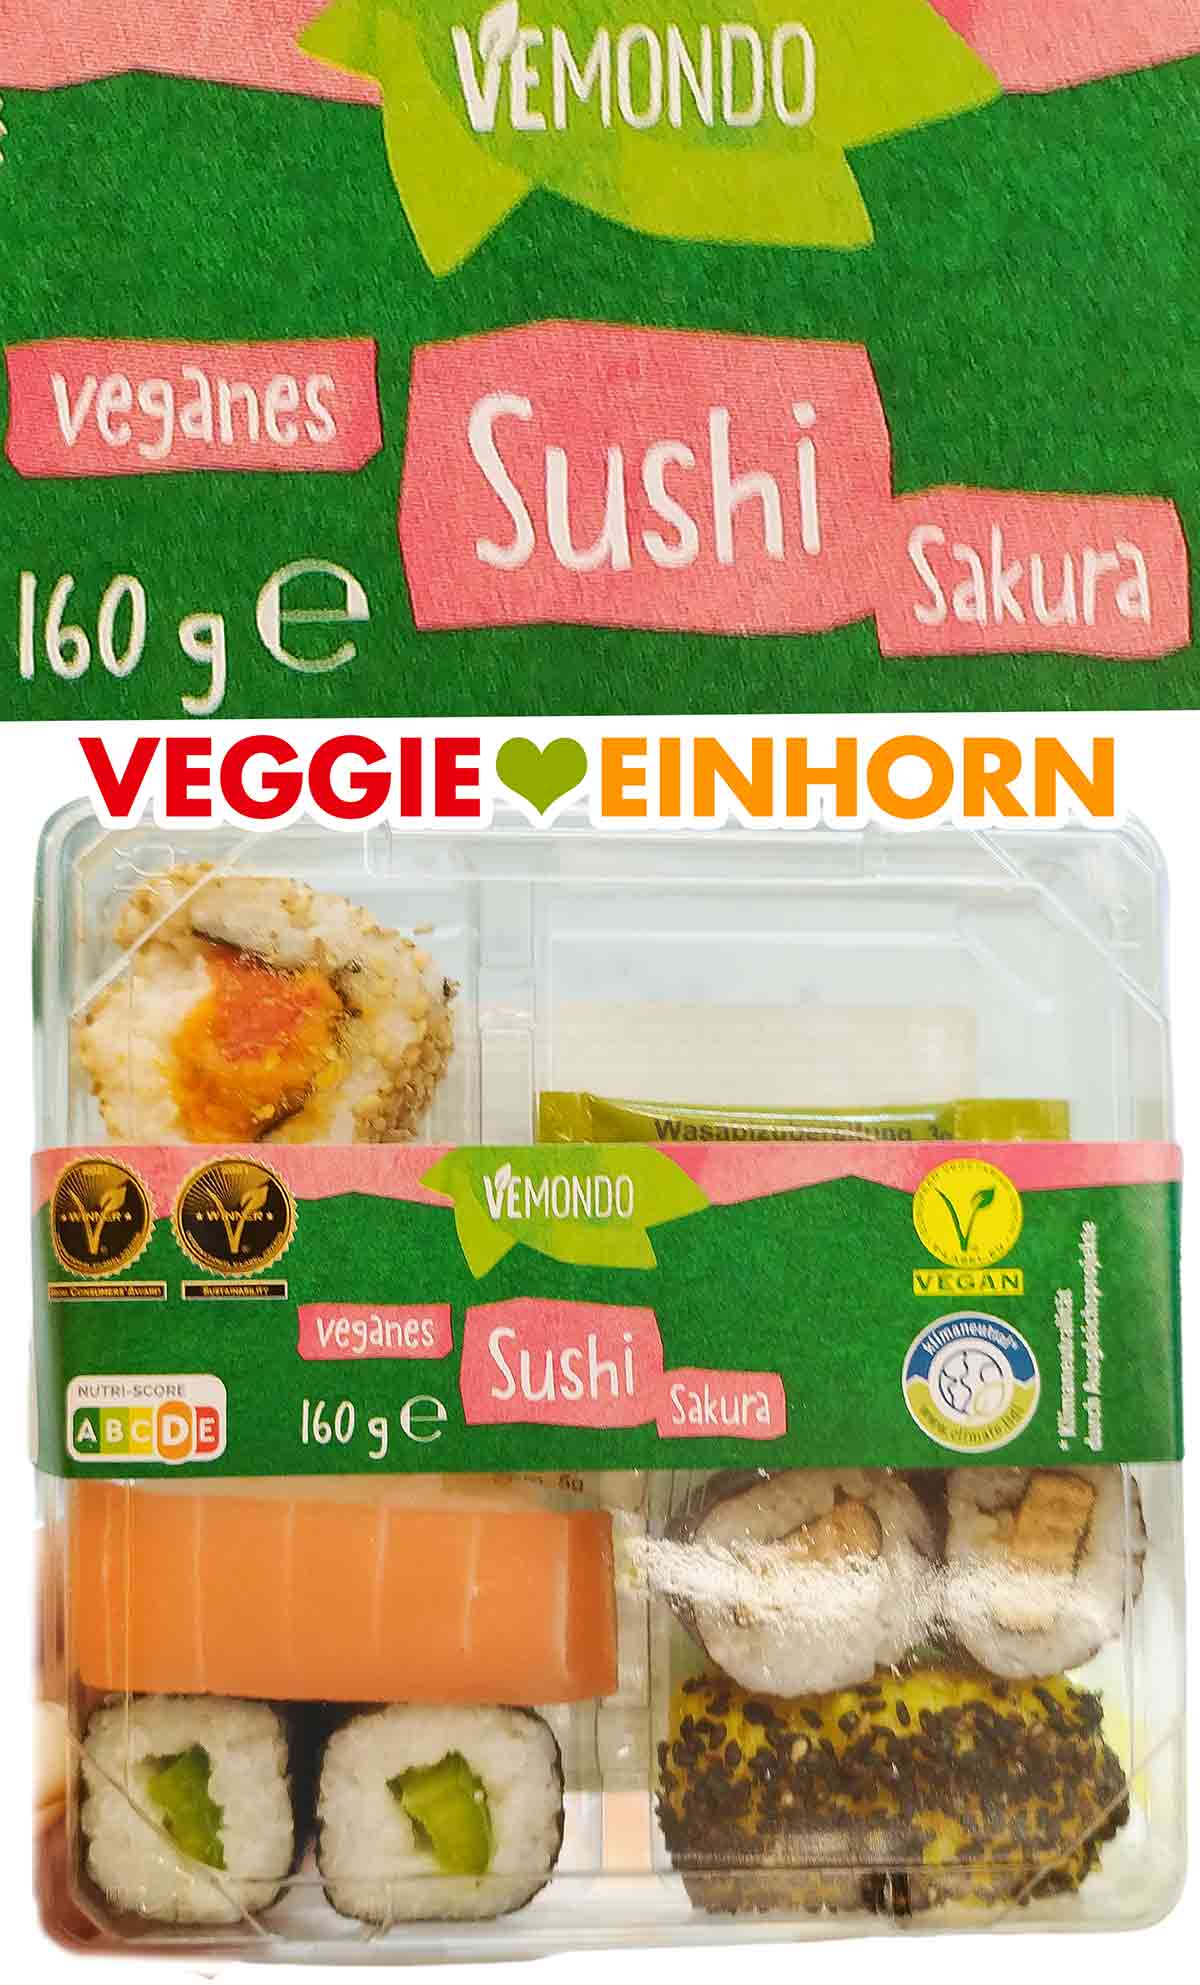 Vemondo Veganes Sushi Sakura von Lidl